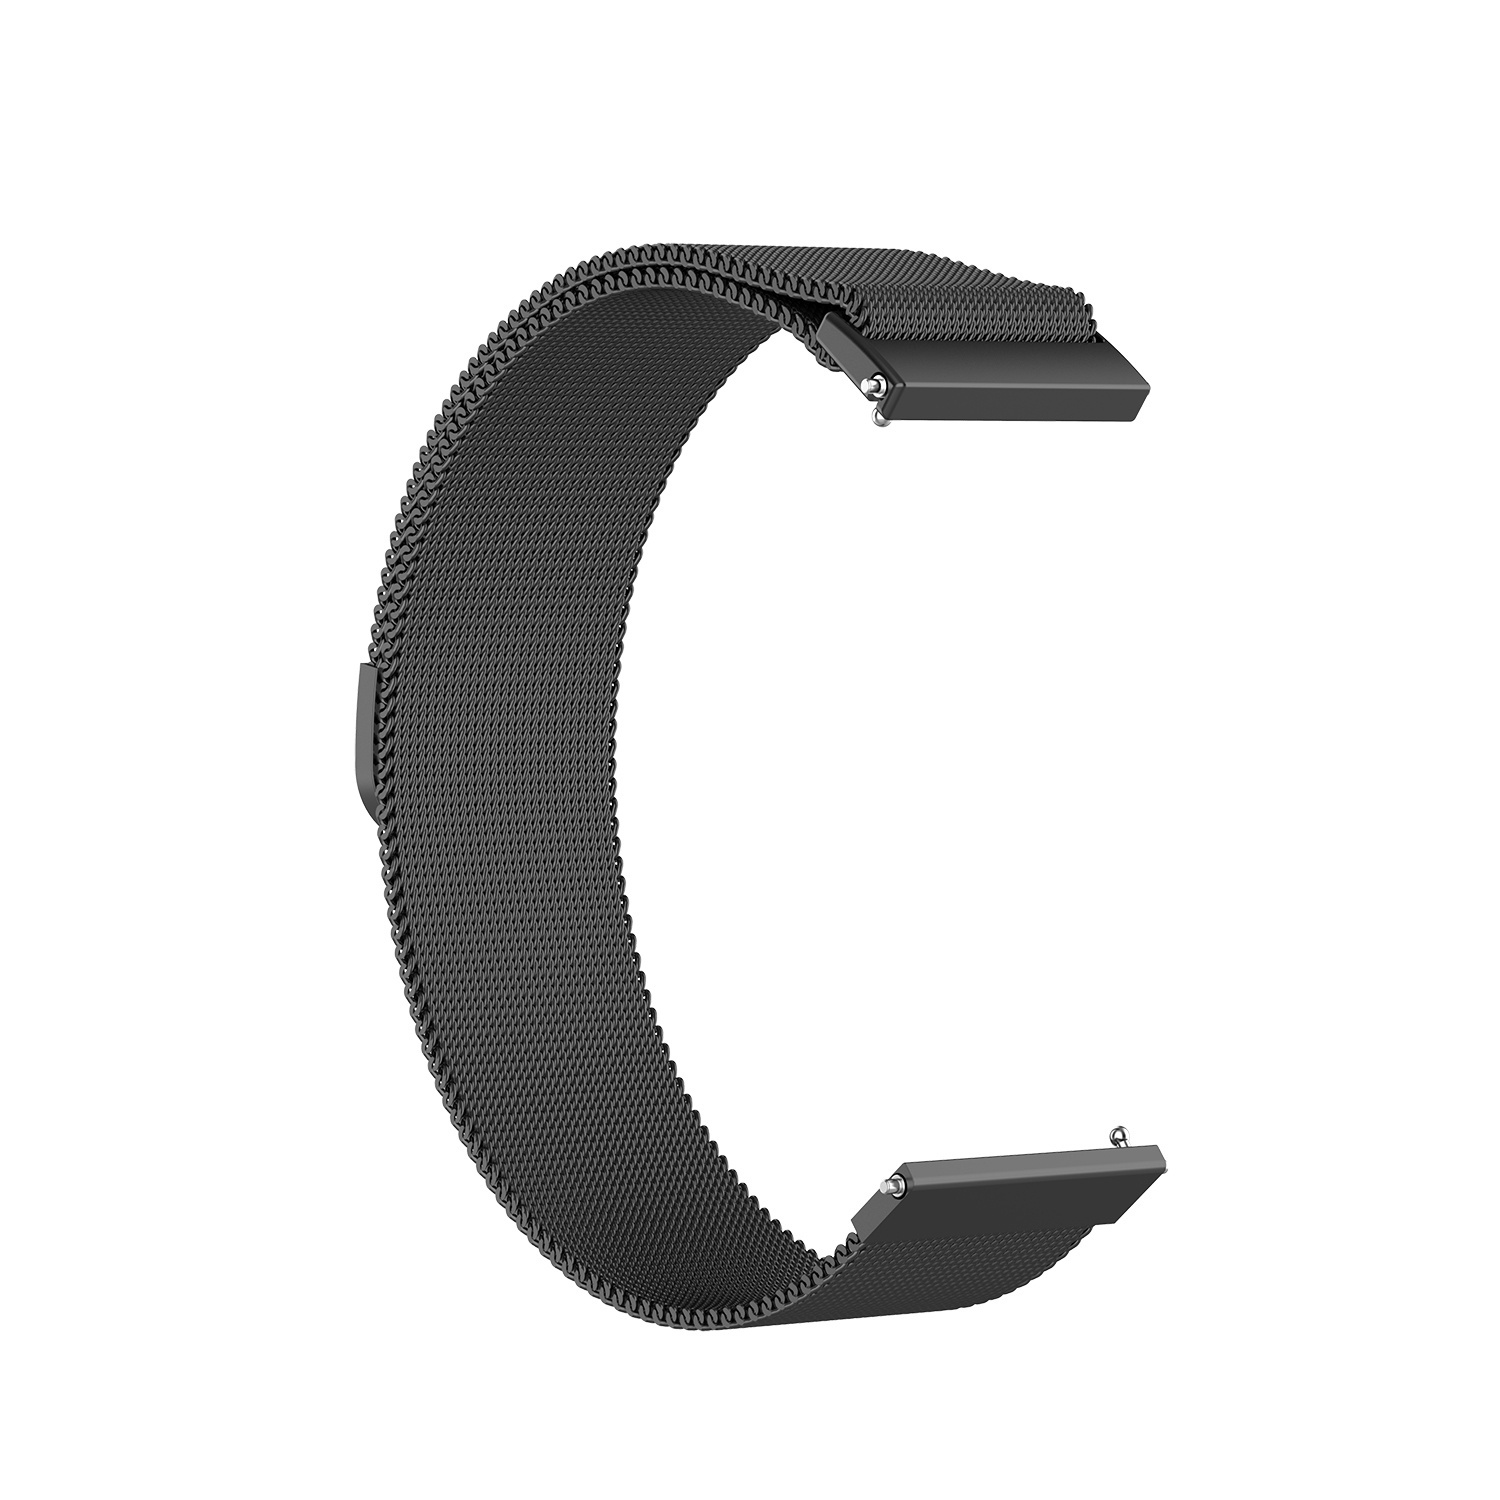 Correa Milanese loop para el Samsung Galaxy Watch - negra